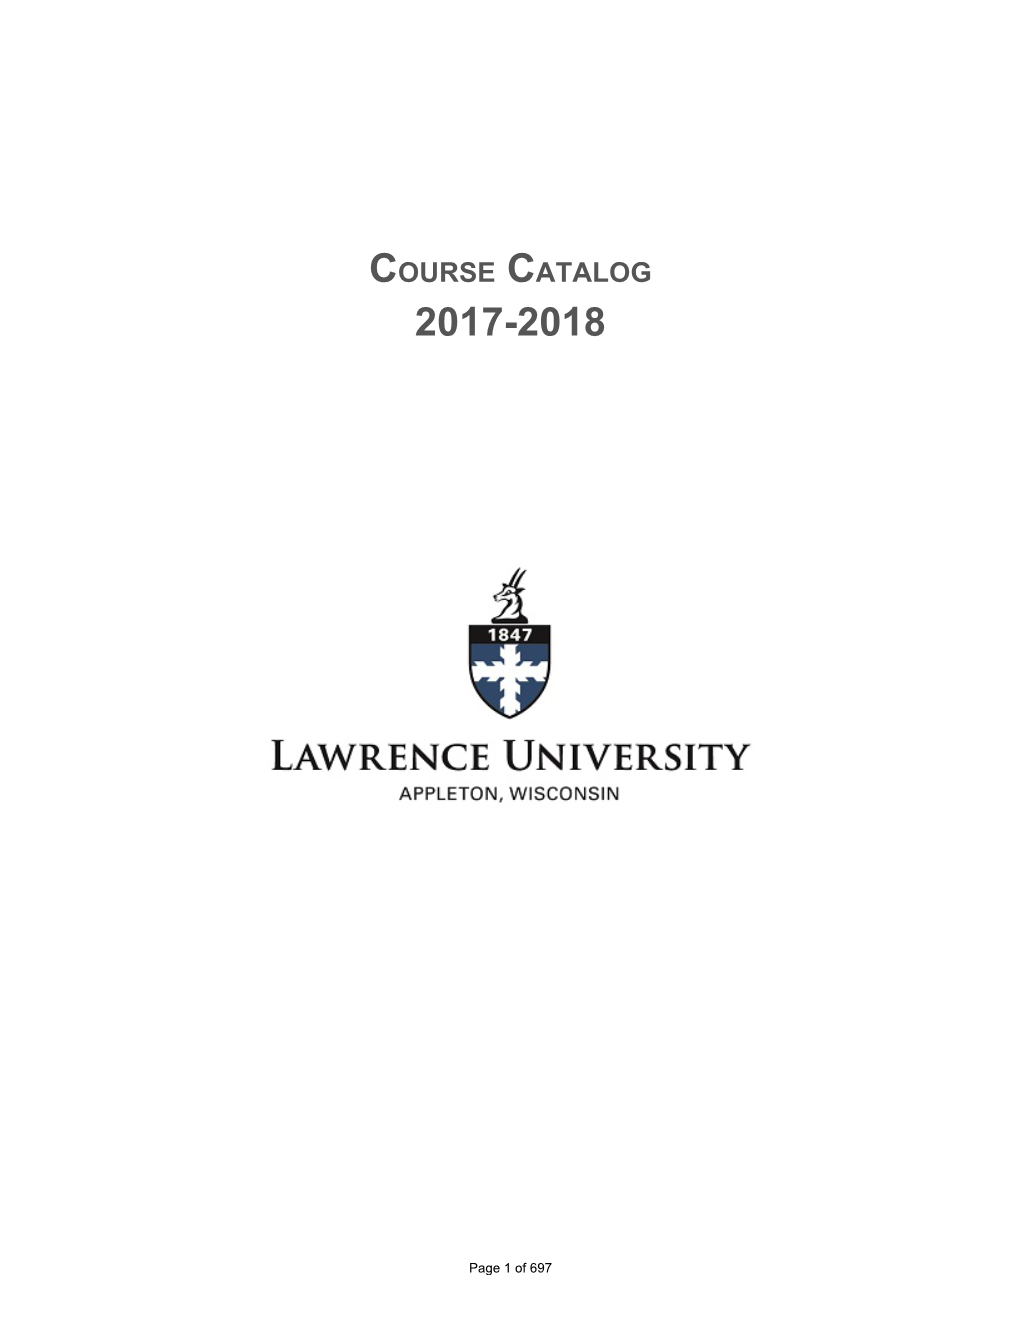 Course Catalog 2017-18 (PDF)